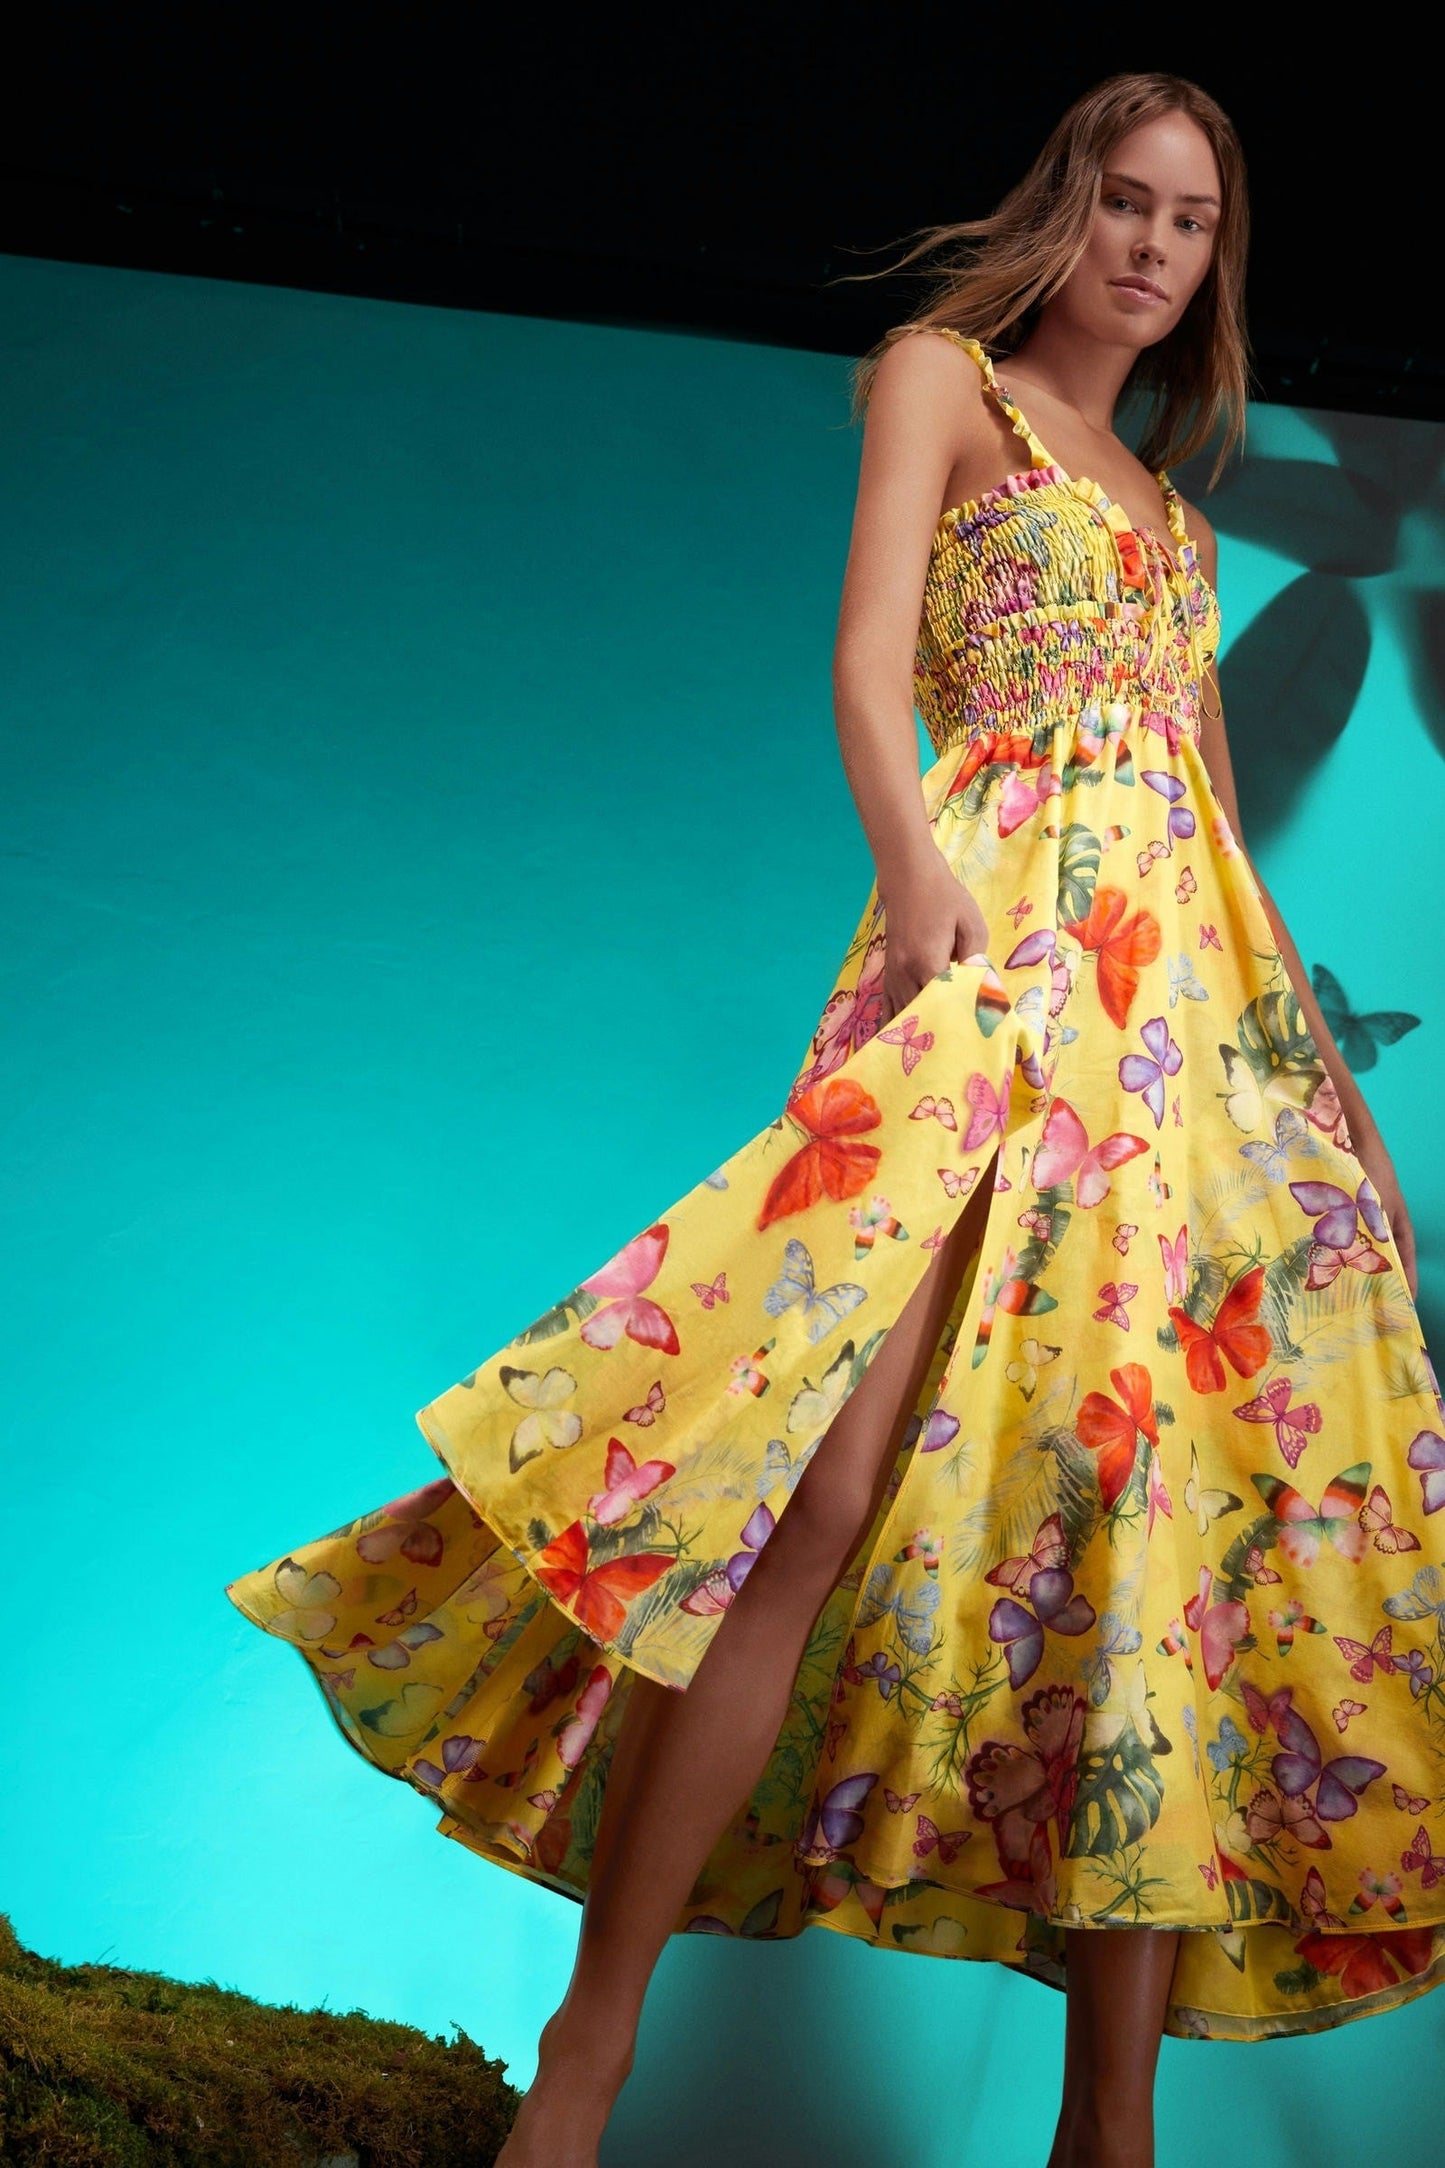 Charo Ruiz Coa Long Dress - Premium Long Dresses from Marina St Barth - Just $645! Shop now at Marina St Barth